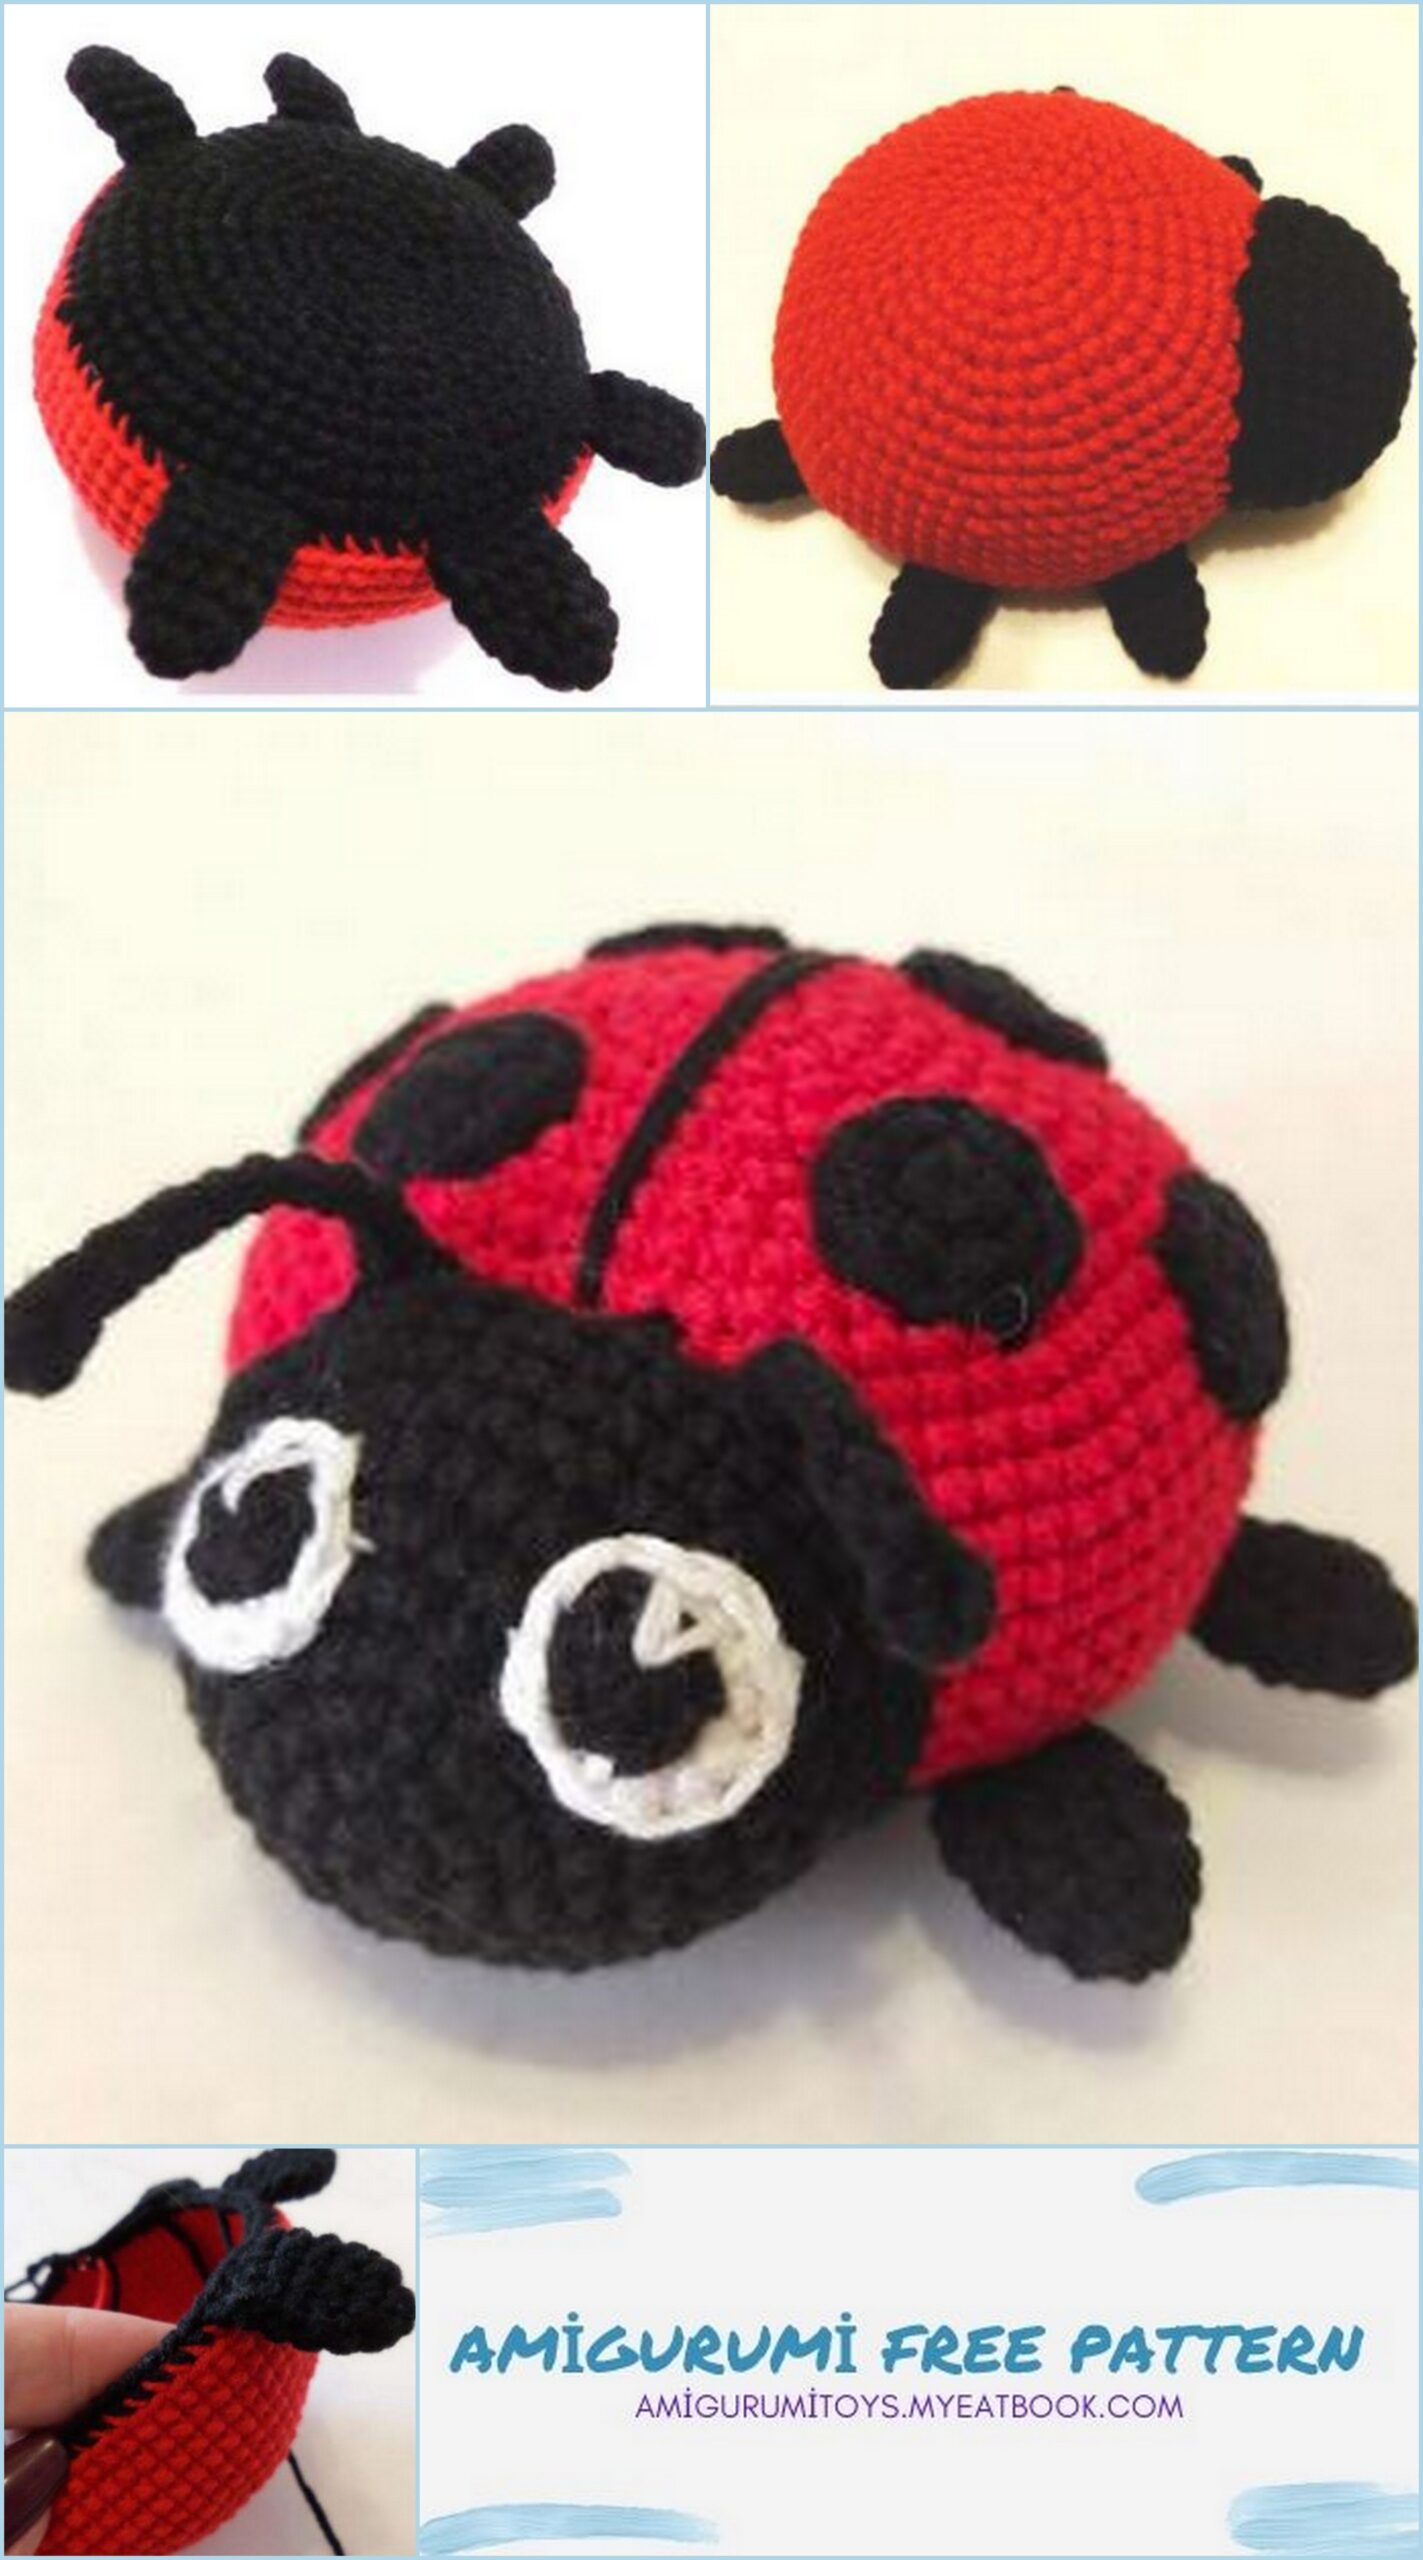 Amigurumi Ladybug Free Pattern - Amigurumi toys